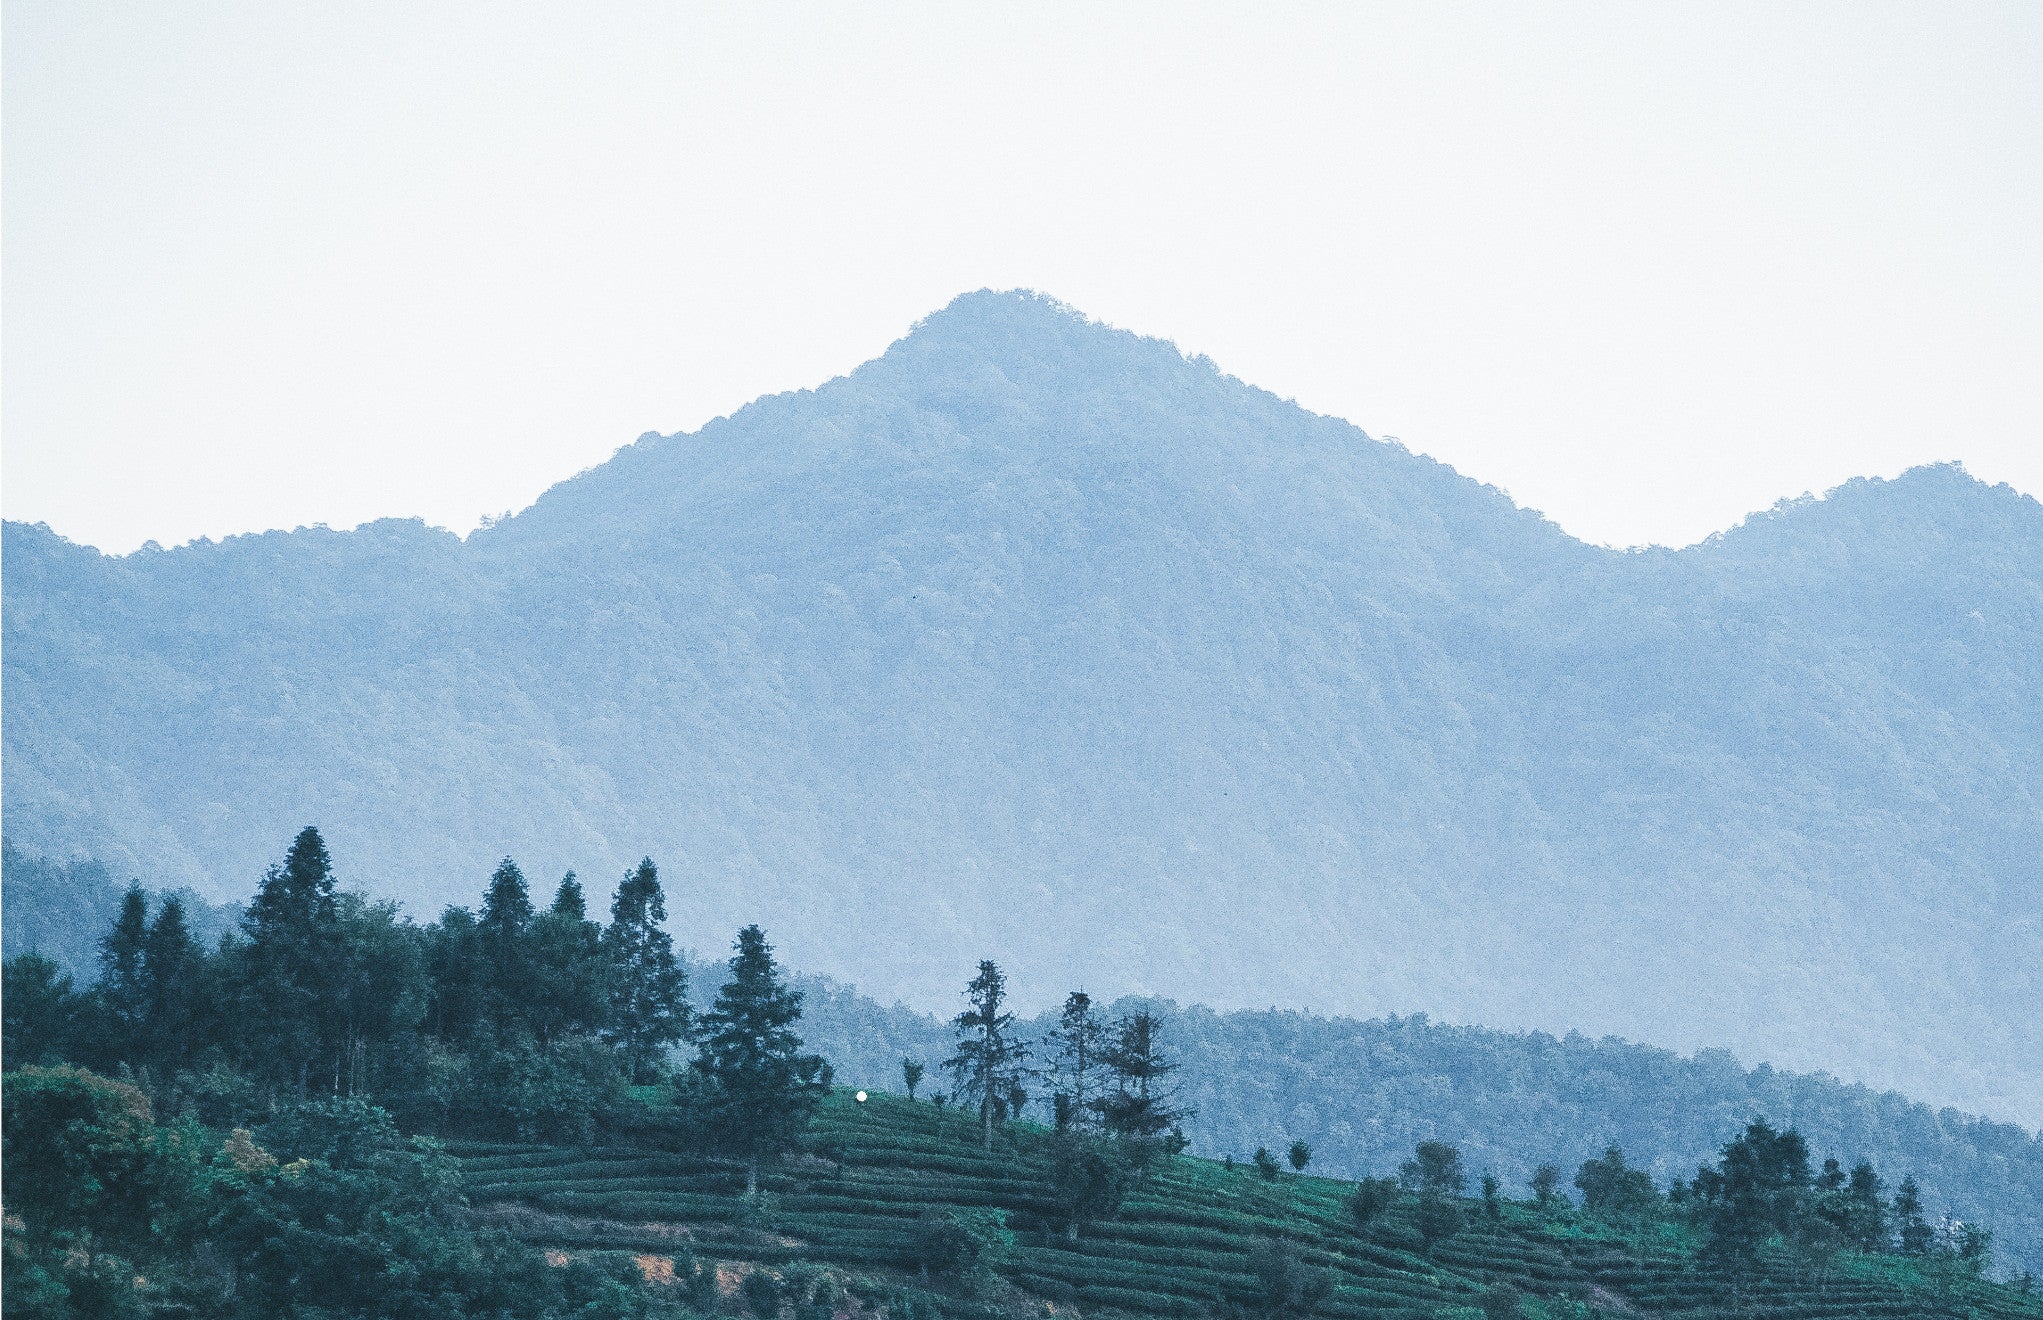 tea mountain landscape